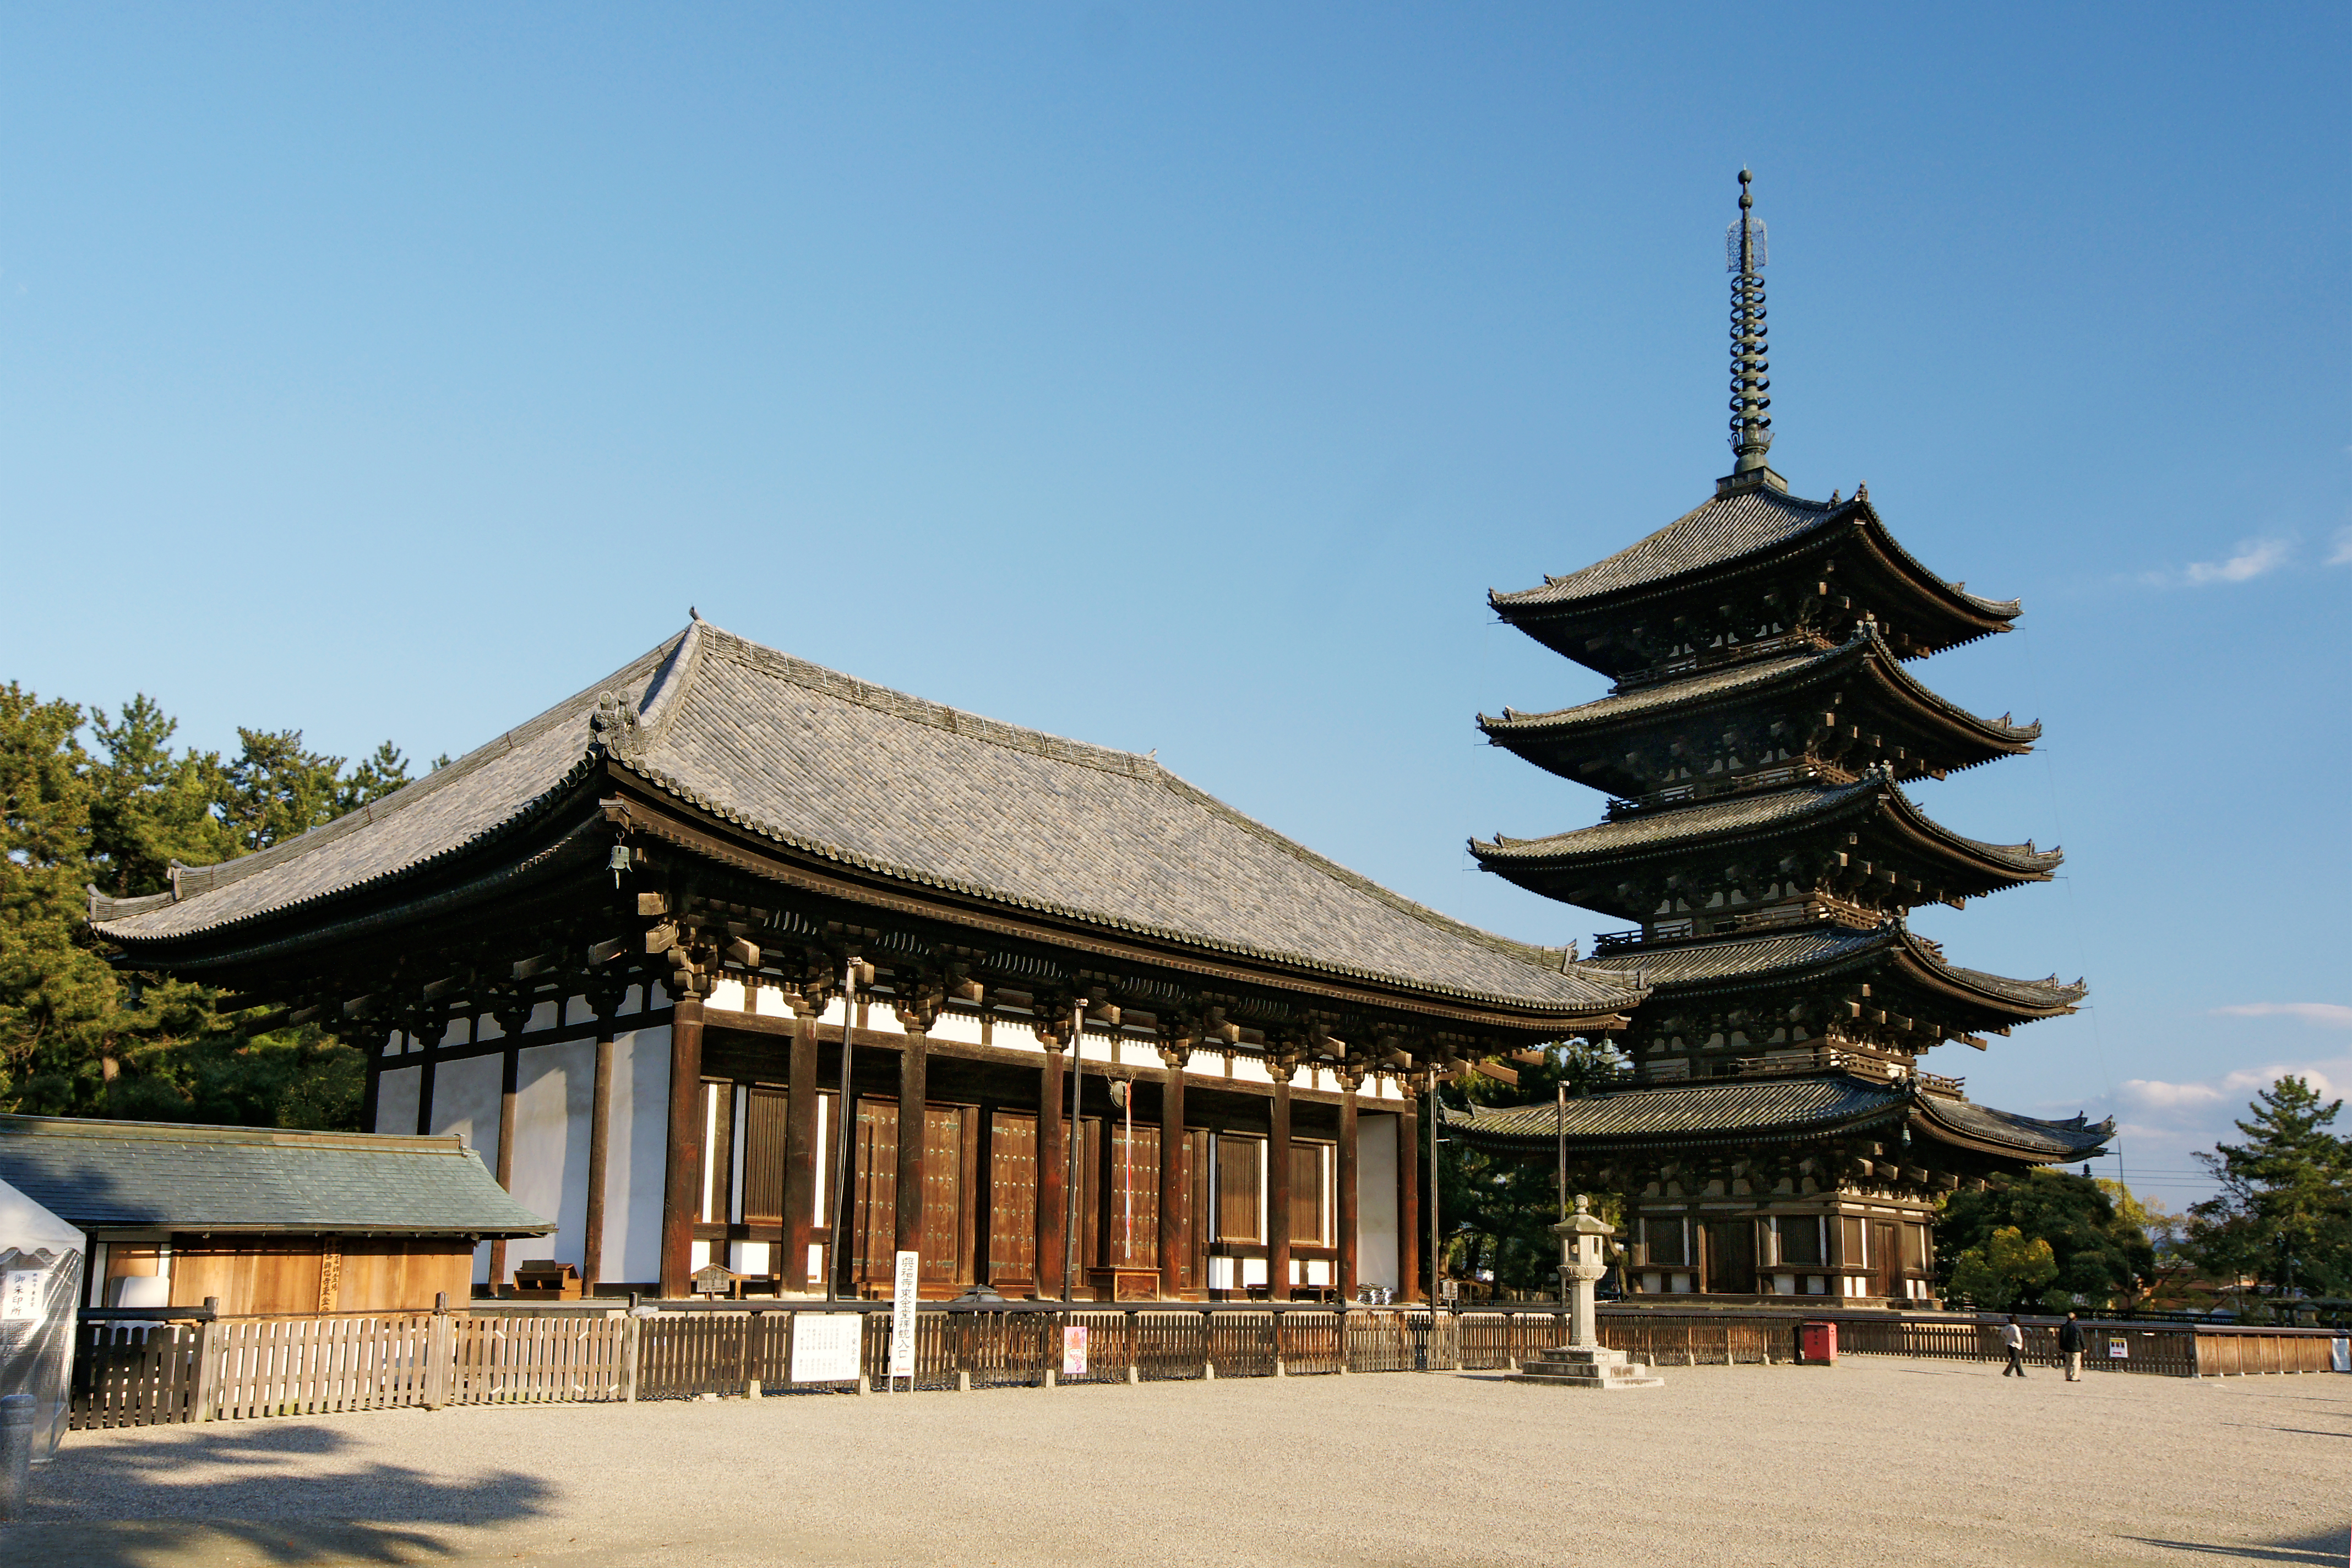 興福寺 Wikipedia